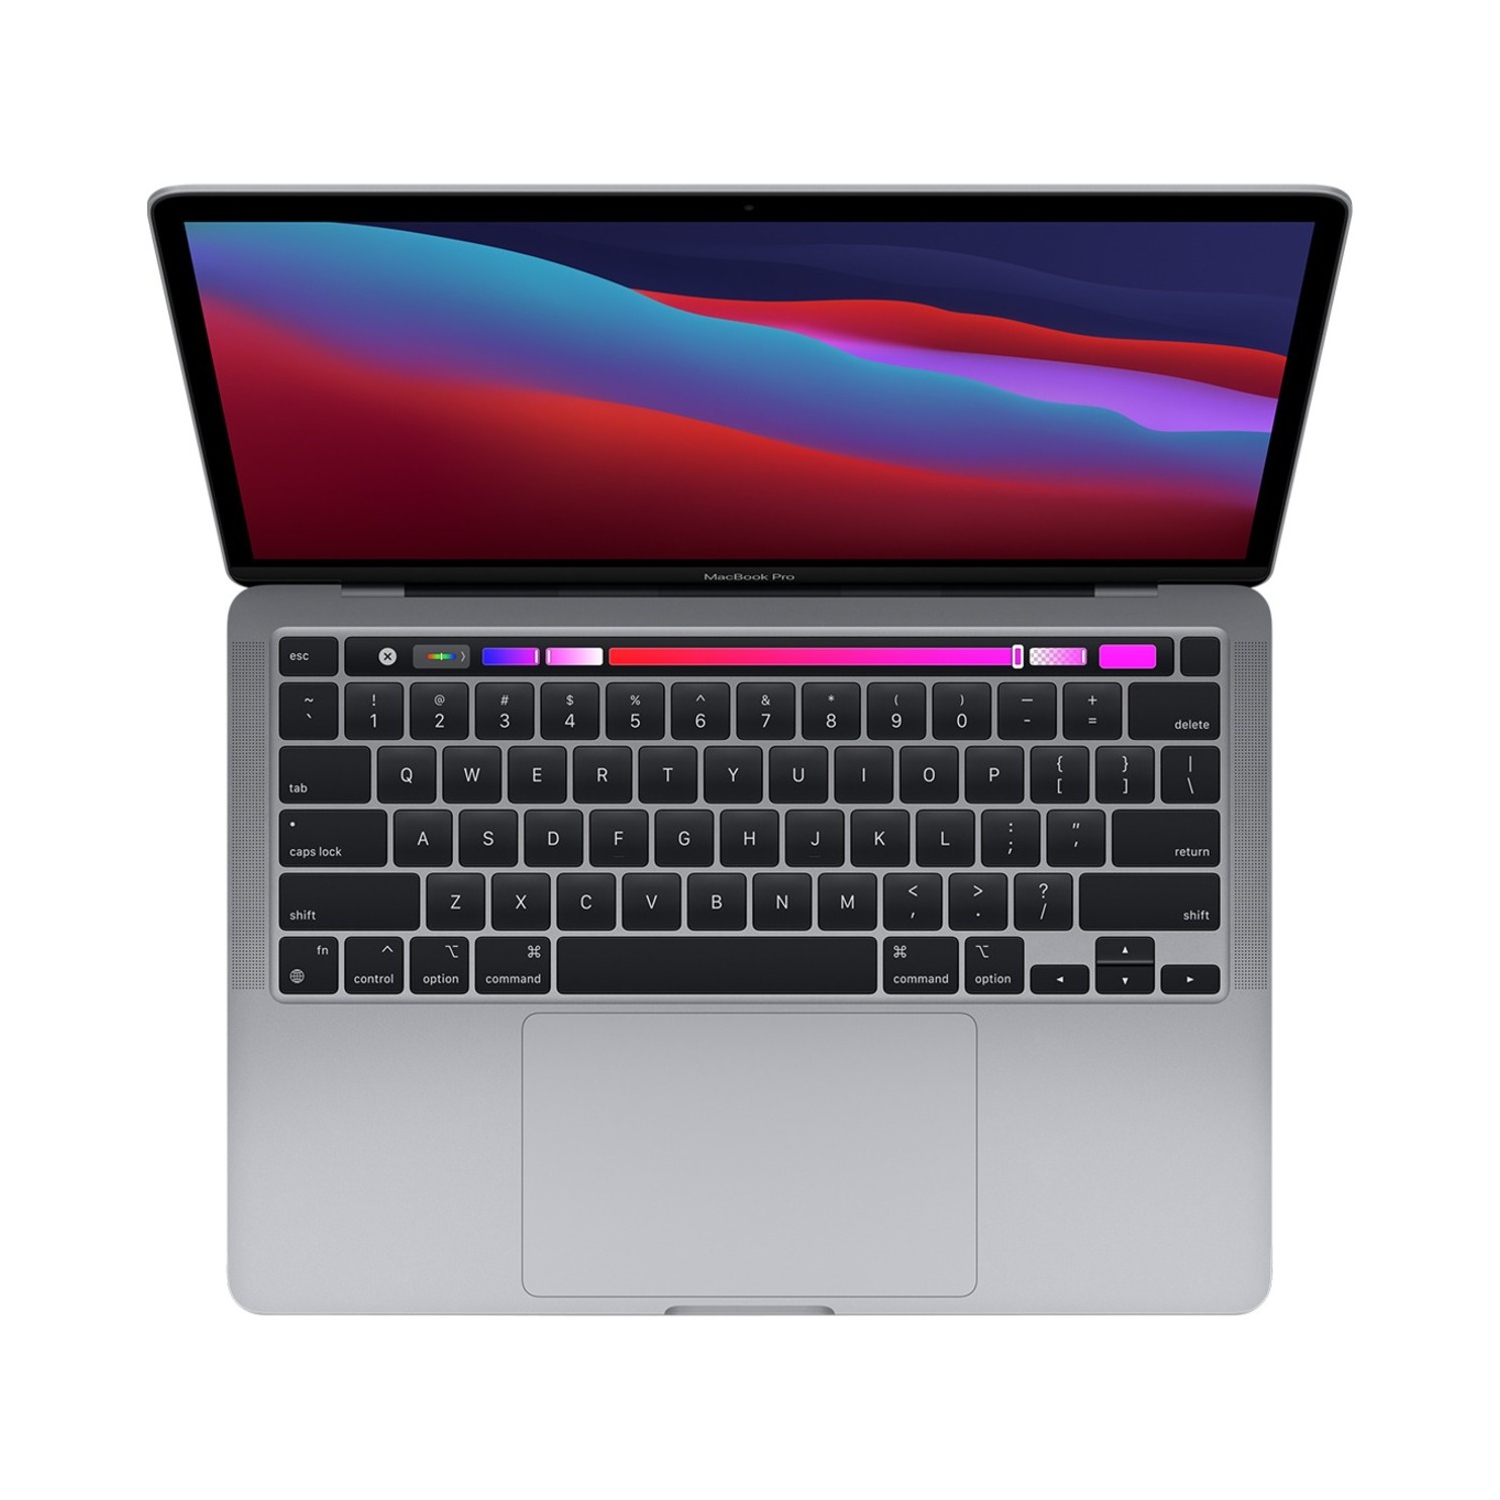 Apple MacBook Pro 13.3" w/ Touch Bar (Fall 2020) - Space Grey (Apple M1 Chip / 256GB SSD / 8GB RAM) - En - Open Box